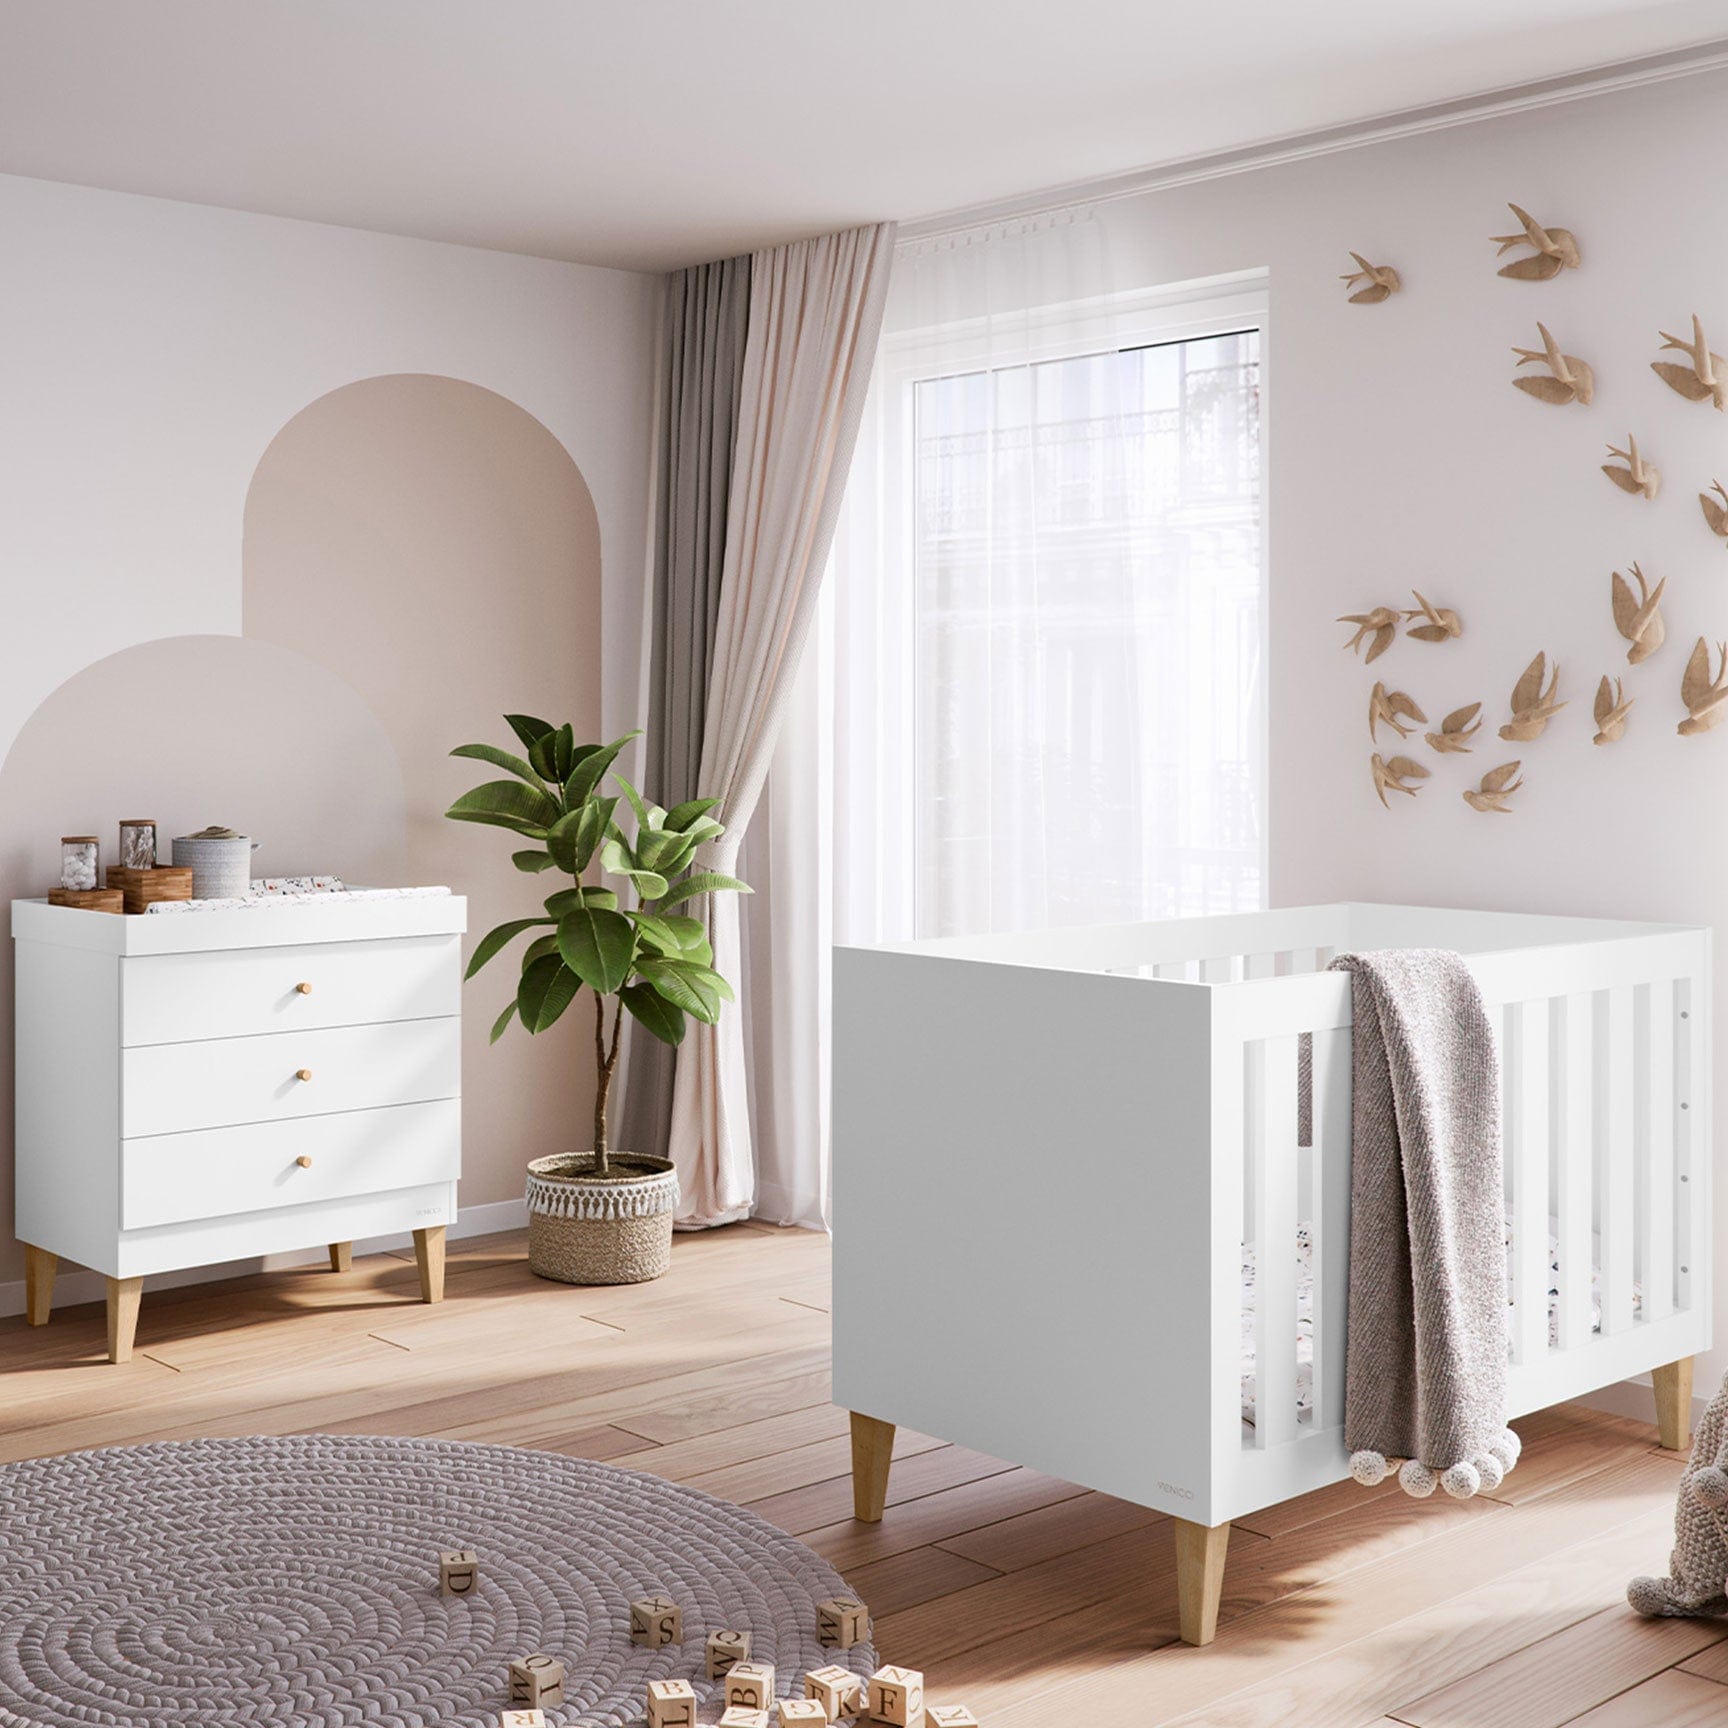 Venicci Nursery Room Sets Venicci Saluzzo 2 Piece Dresser Roomset in Premium White